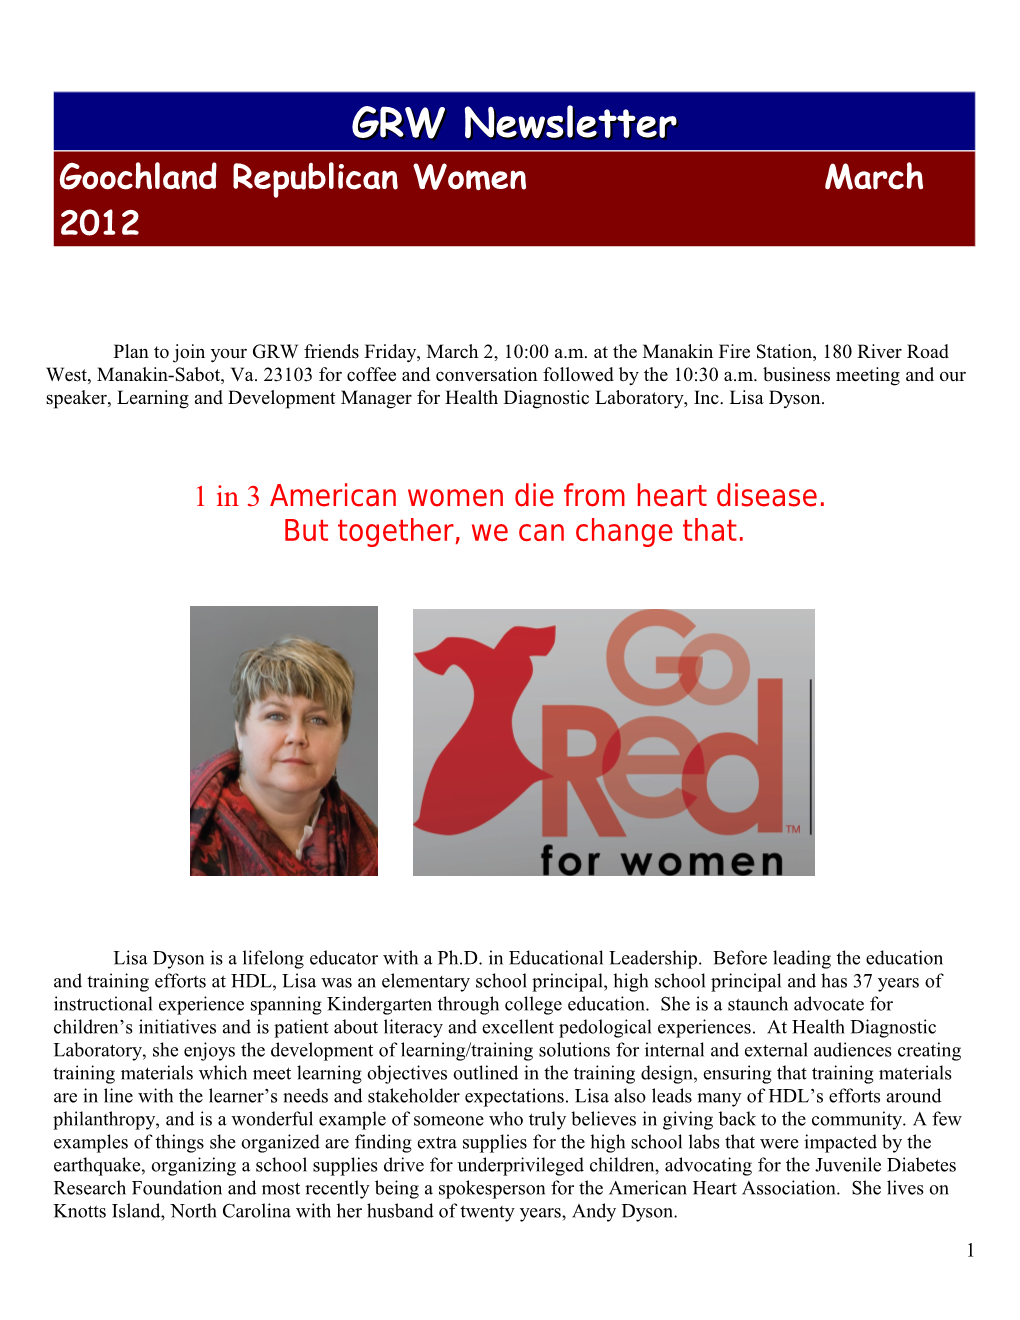 1 in 3 American Women Die from Heart Disease